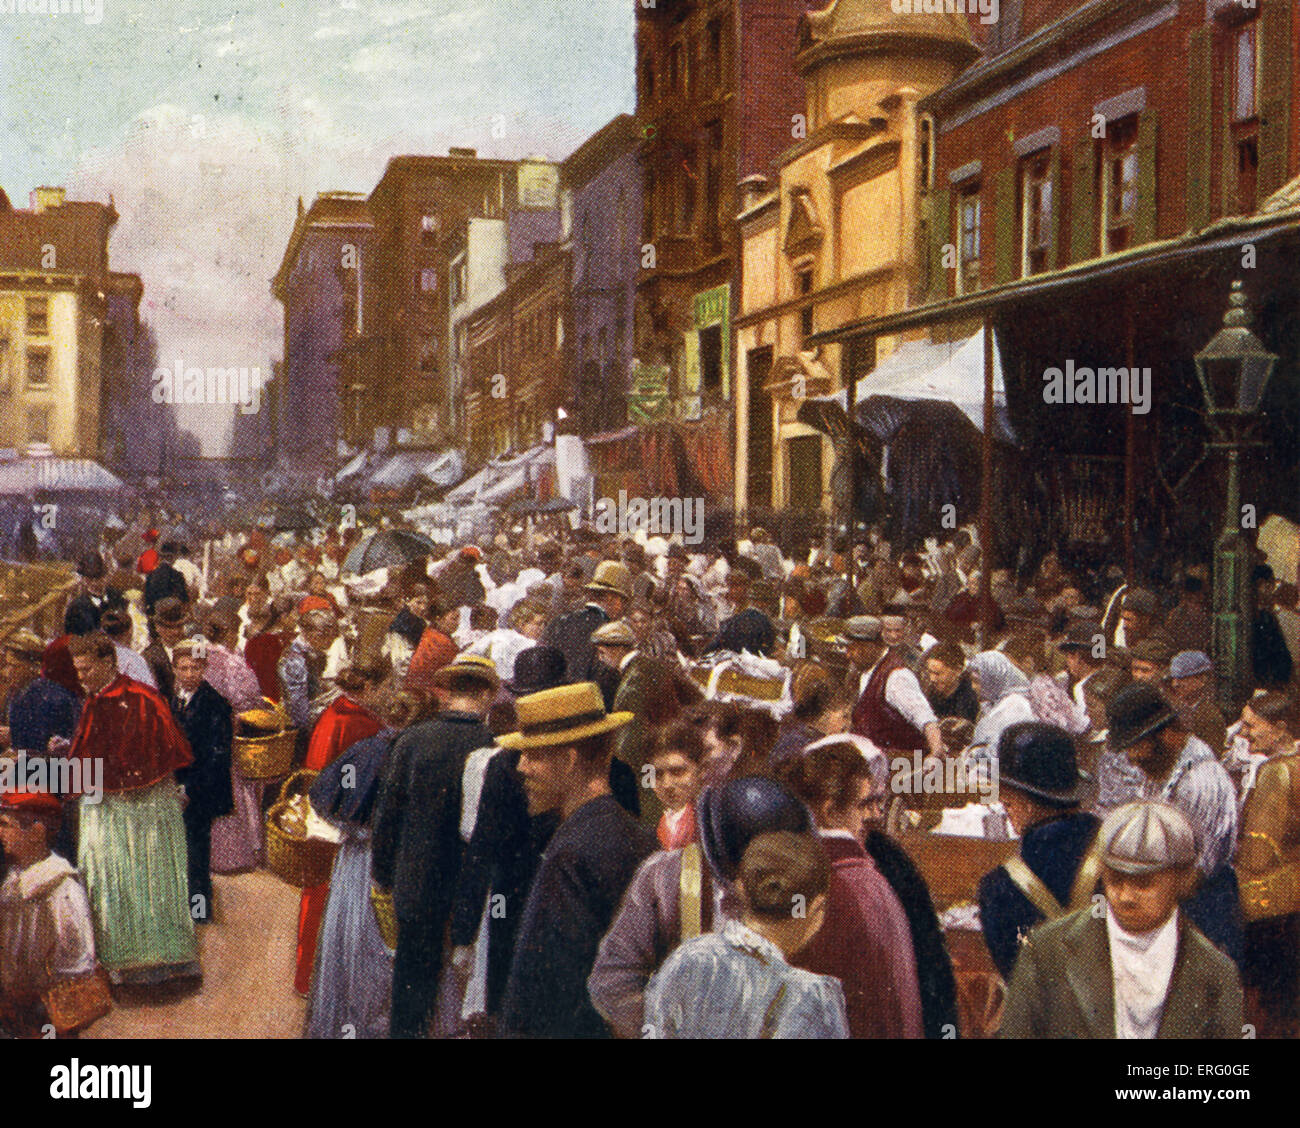 Lower East Side, New York, mit Passanten schlendern durch die Straßen neben dem Markt der 1890er Jahre Stände.  Bildunterschrift lautet: Stockfoto